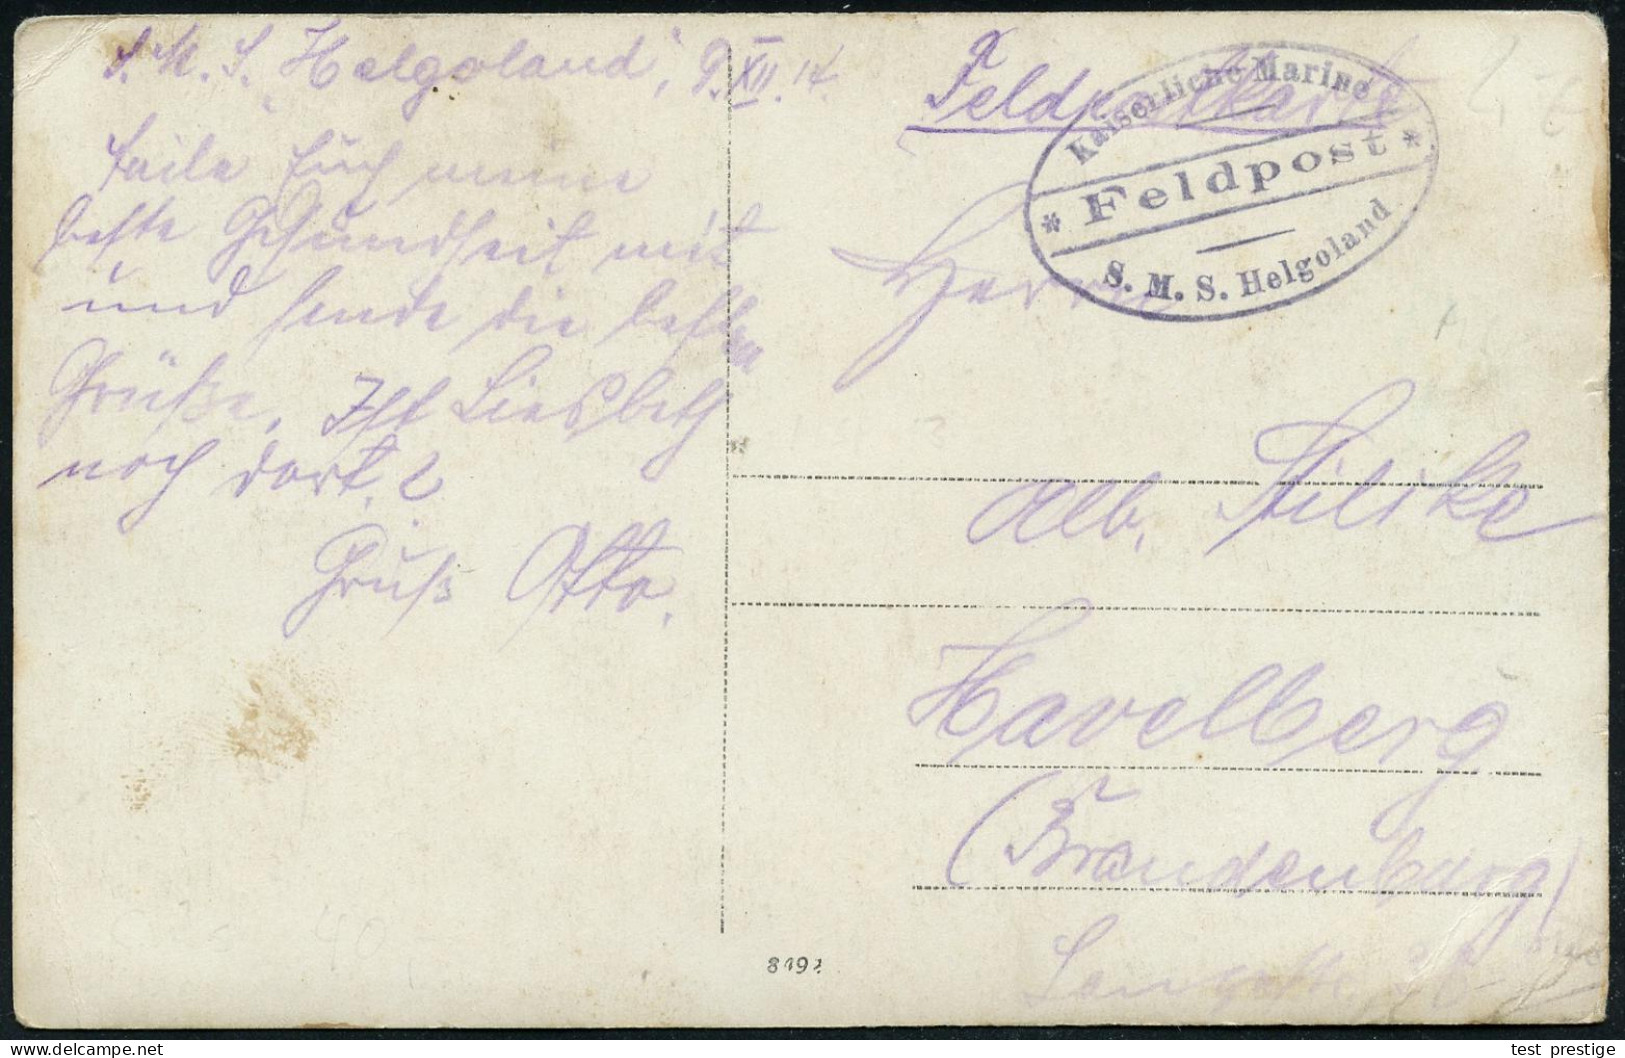 DEUTSCHES REICH 1914 (9.12.) MSP No.13, Viol. Ovalbrücken-Briefstempel: Kaiserliche Marine/* Feldpost */ S.M.S. Helgolan - Marítimo